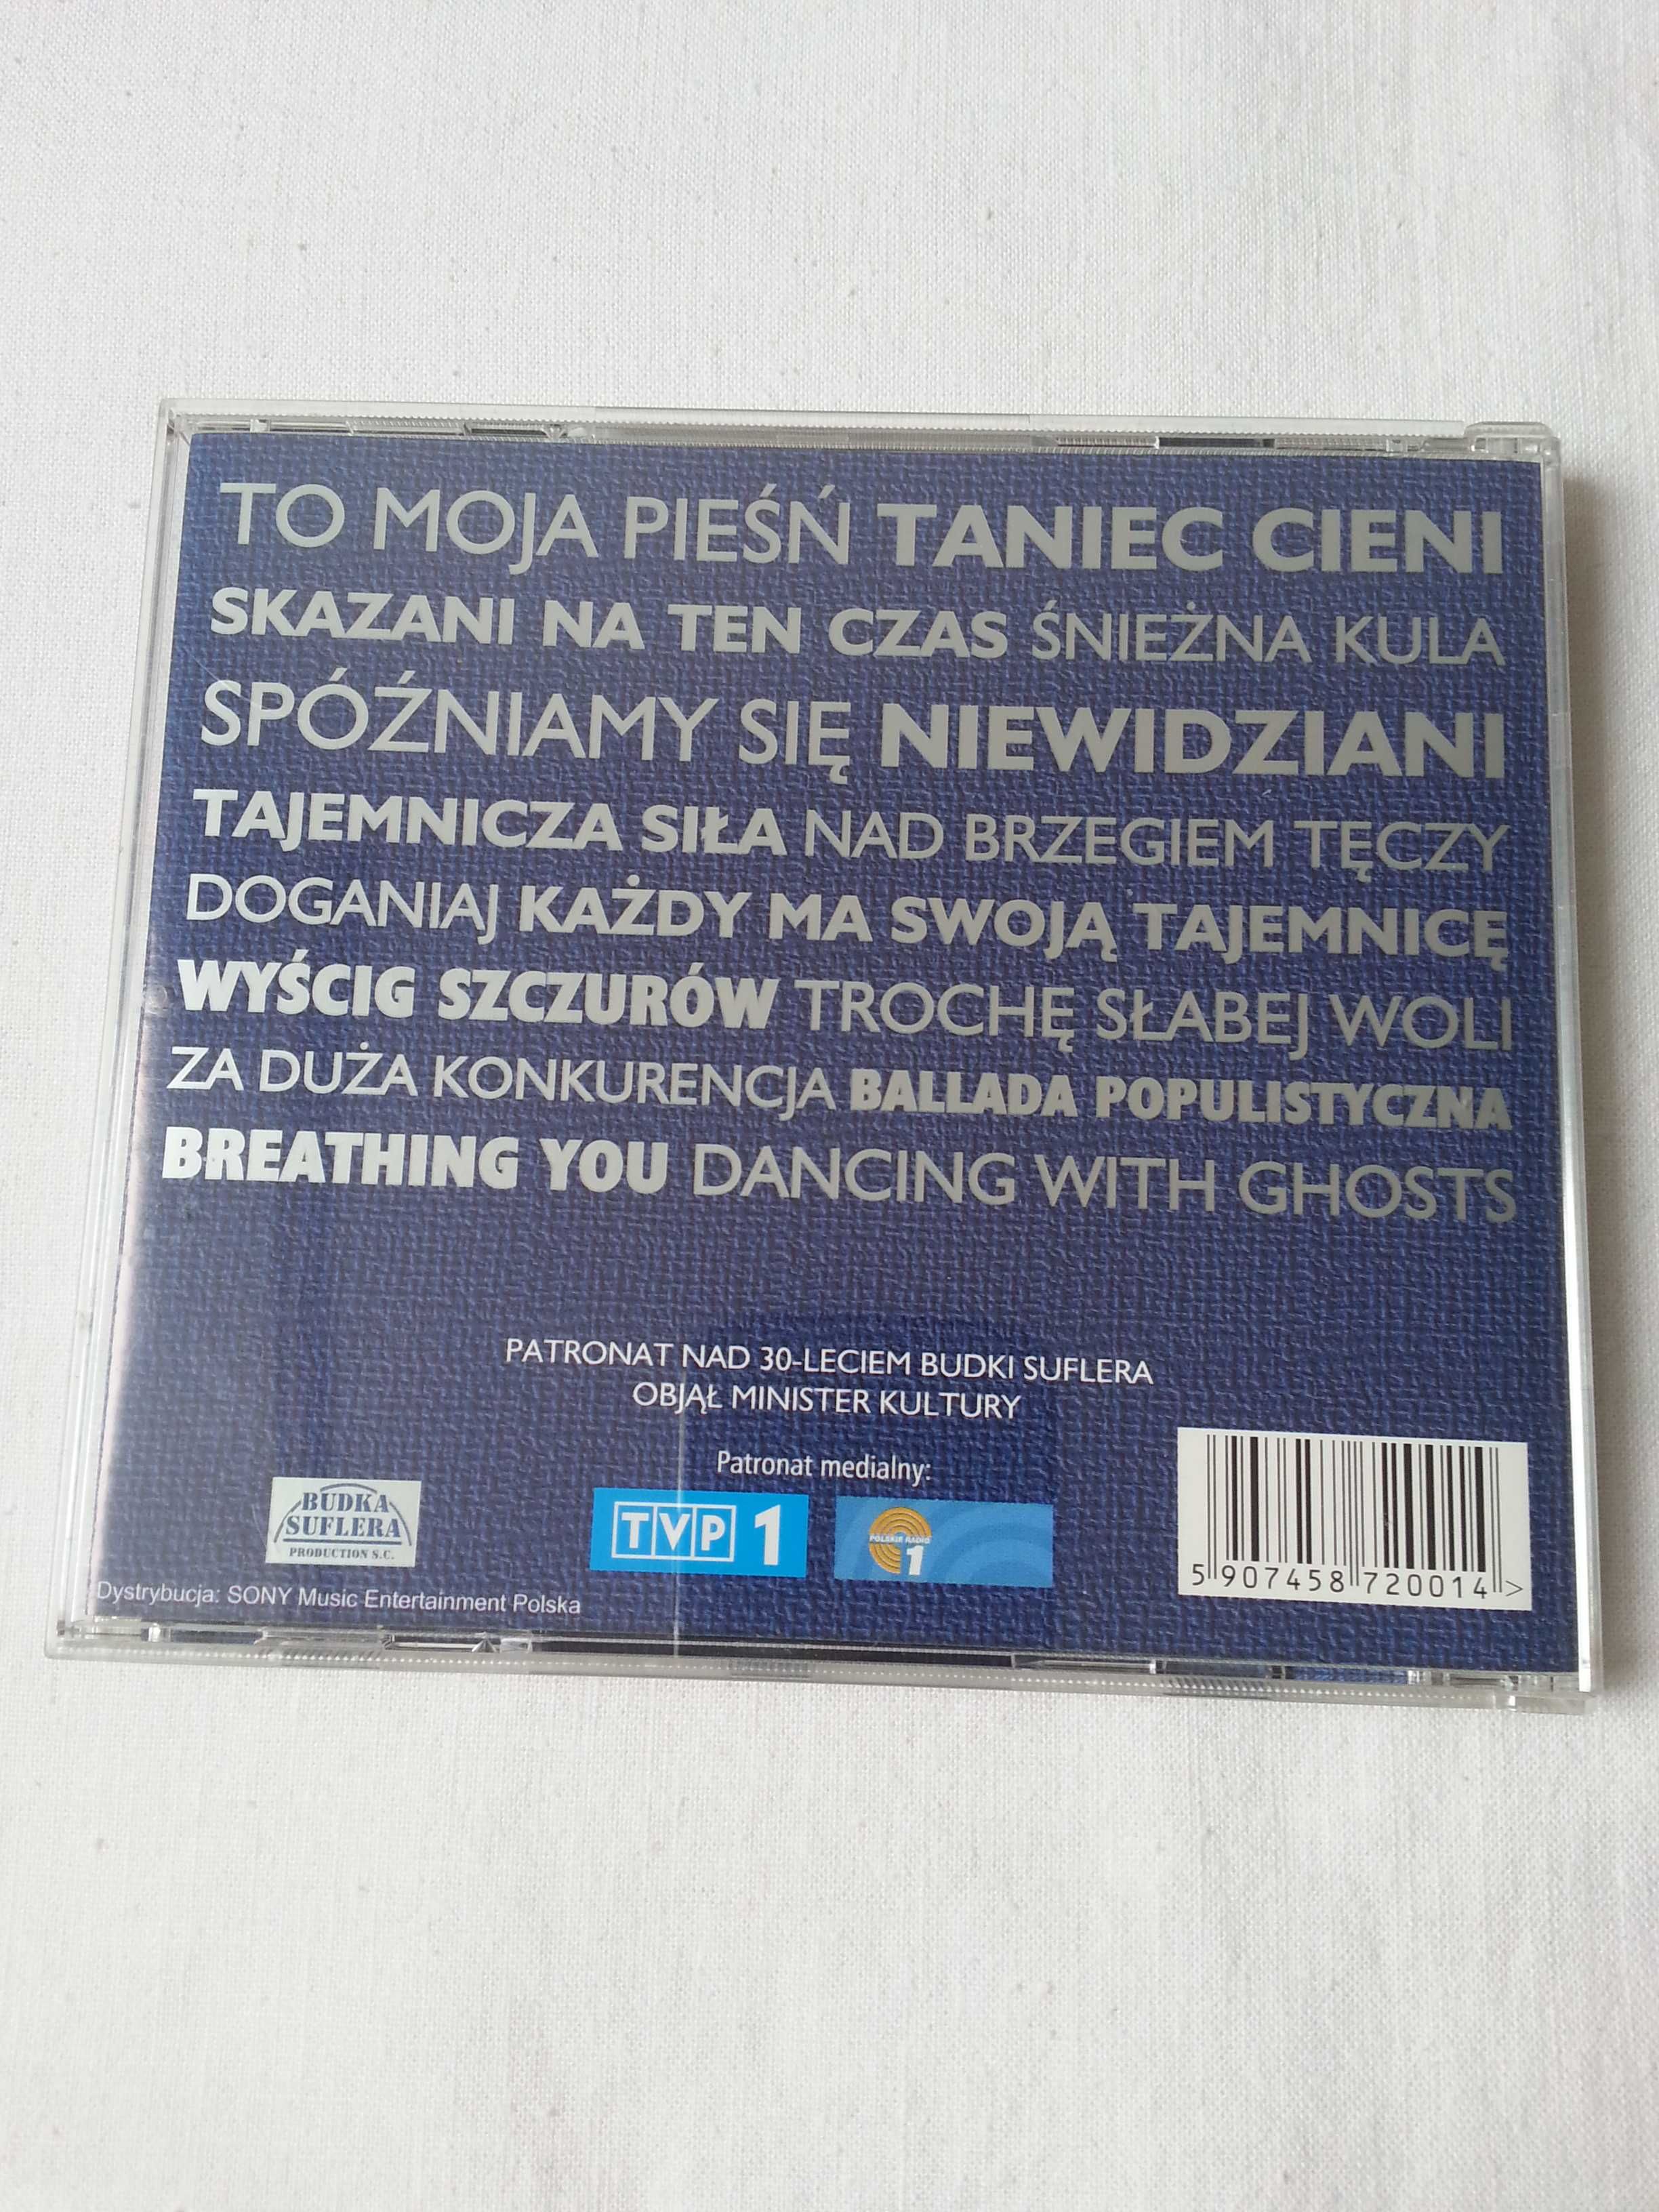 Płyta cd Budka Suflera "jest"